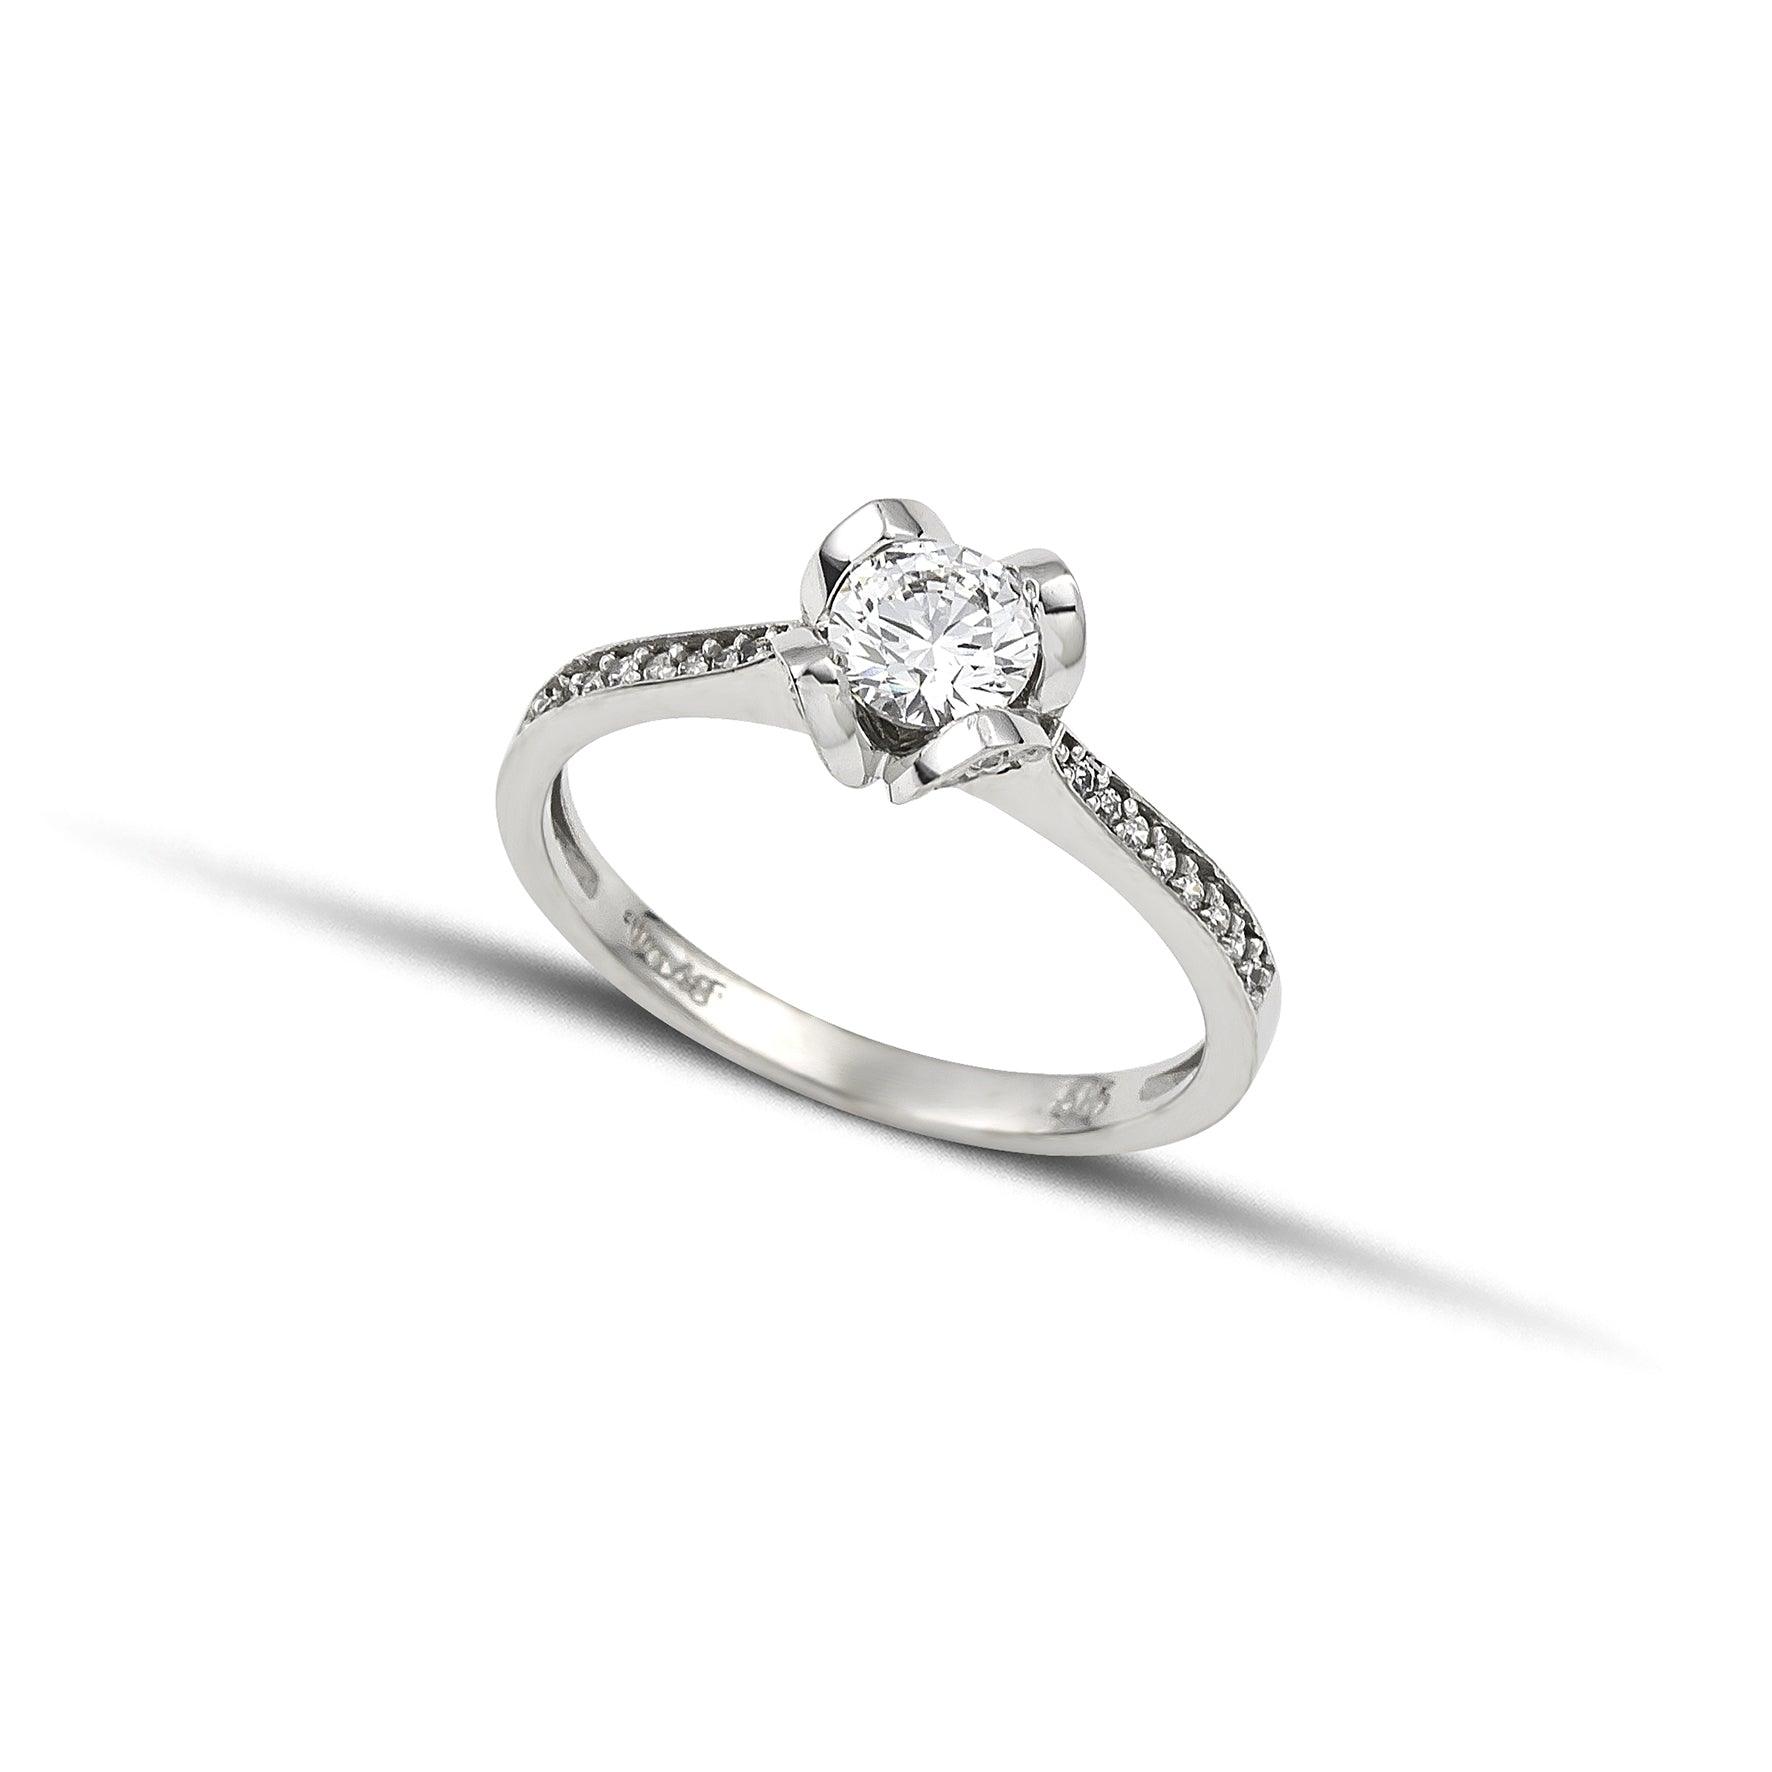 Μονόπετρο δαχτυλίδι με διαμάντι και πλαϊνές πέτρες από μικρότερα διαμάντια, κατασκευασμένο από λευκόχρυσο με καστόνι σε σχήμα λουλουδιού.